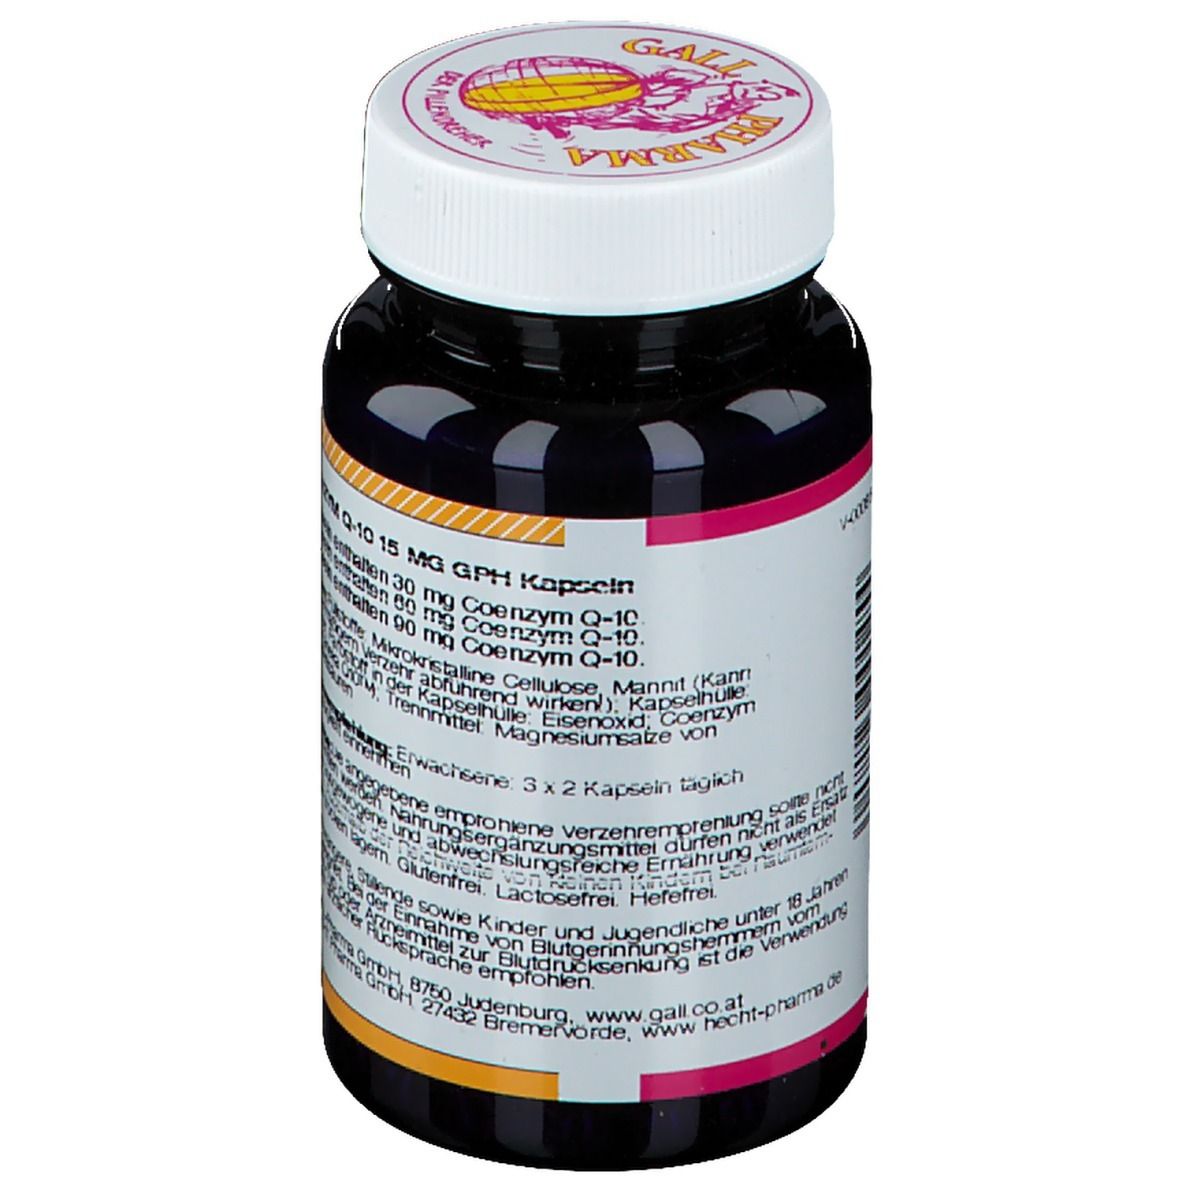 GALL PHARMA COENZYM Q-10 15 mg